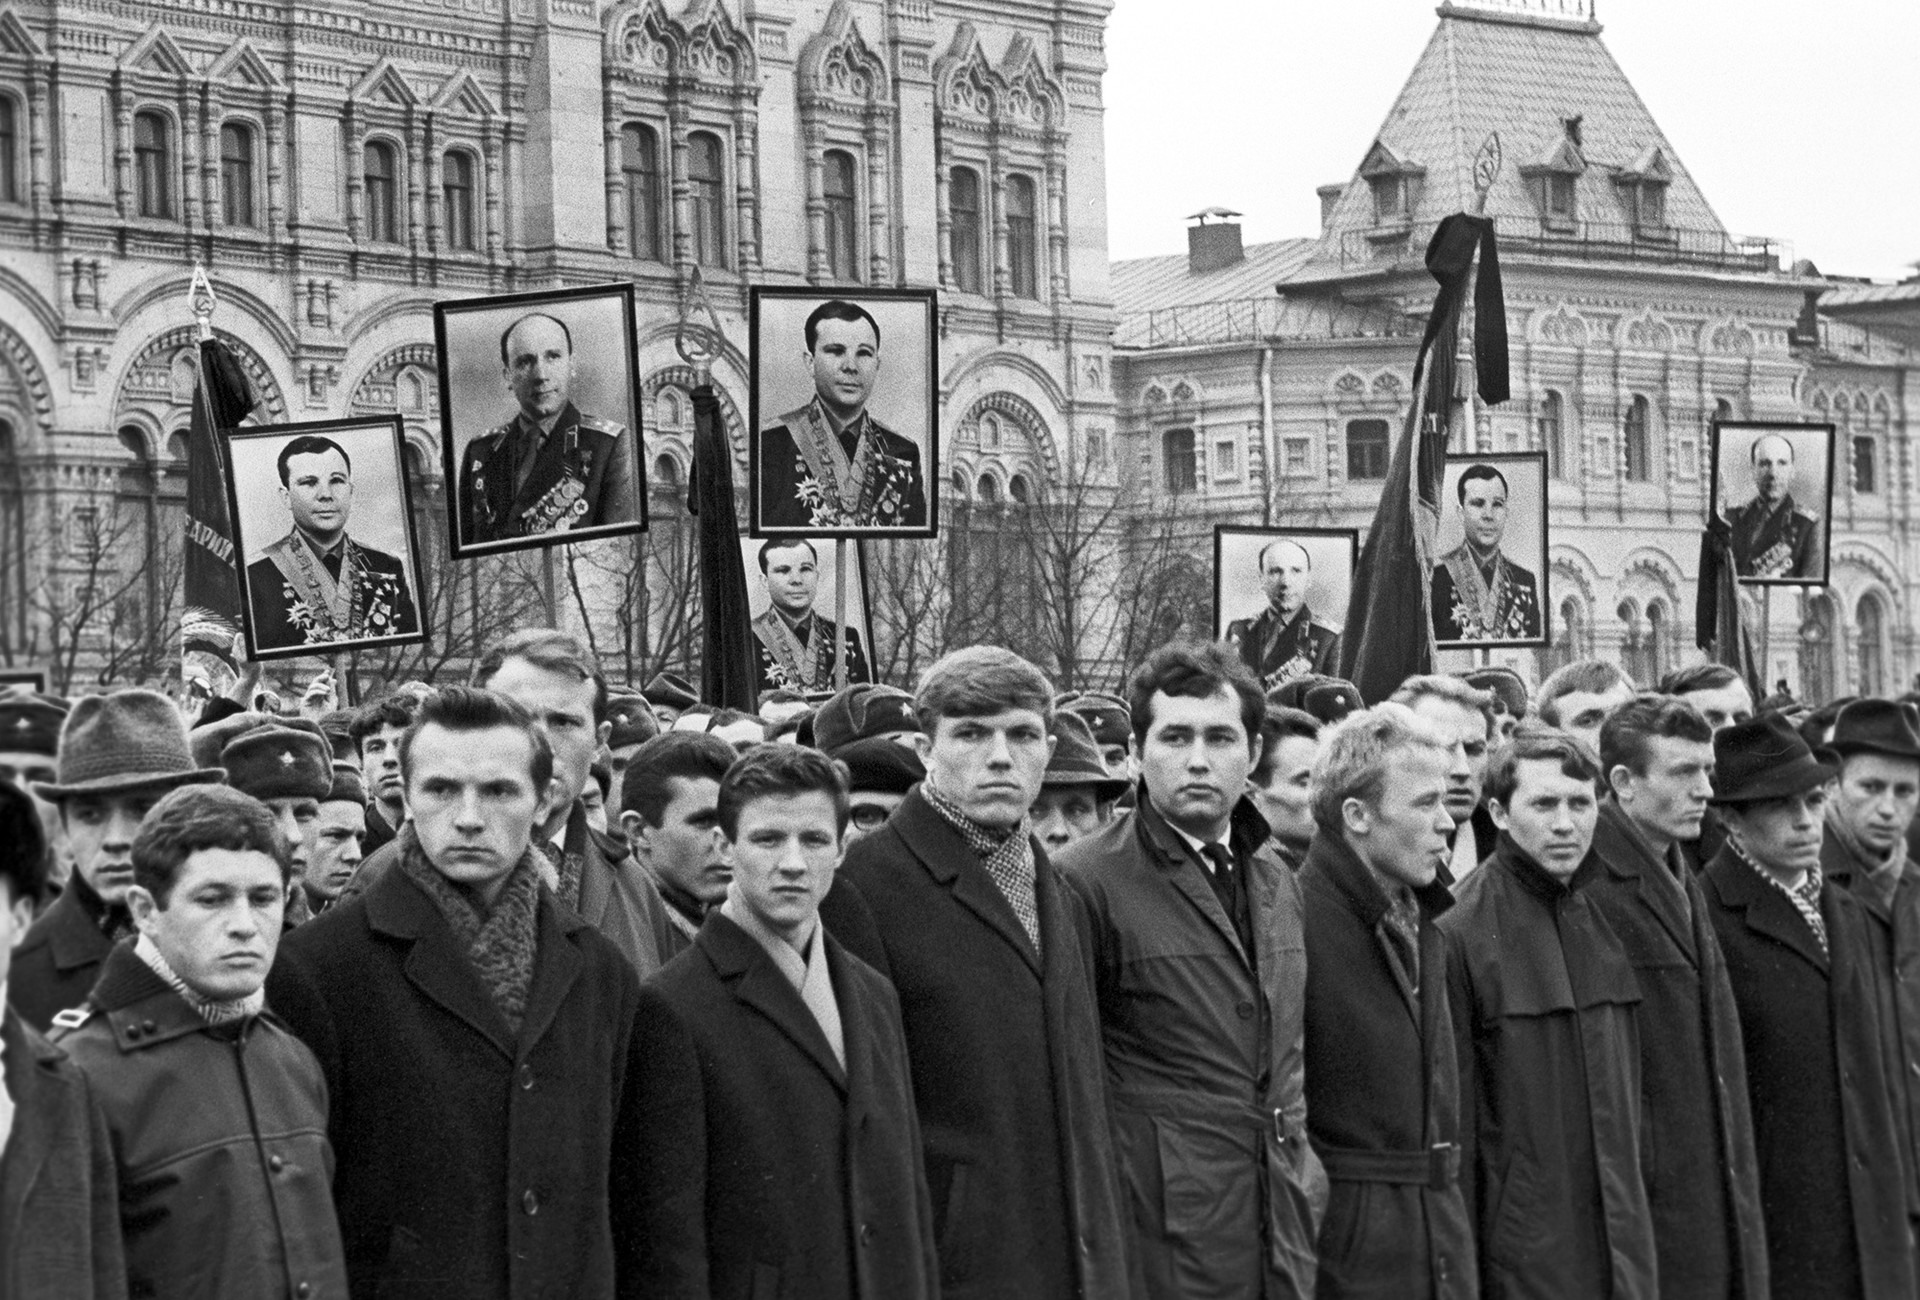 Posmrtna povorka na Crvenom trgu, 30. ožujka 1968.

